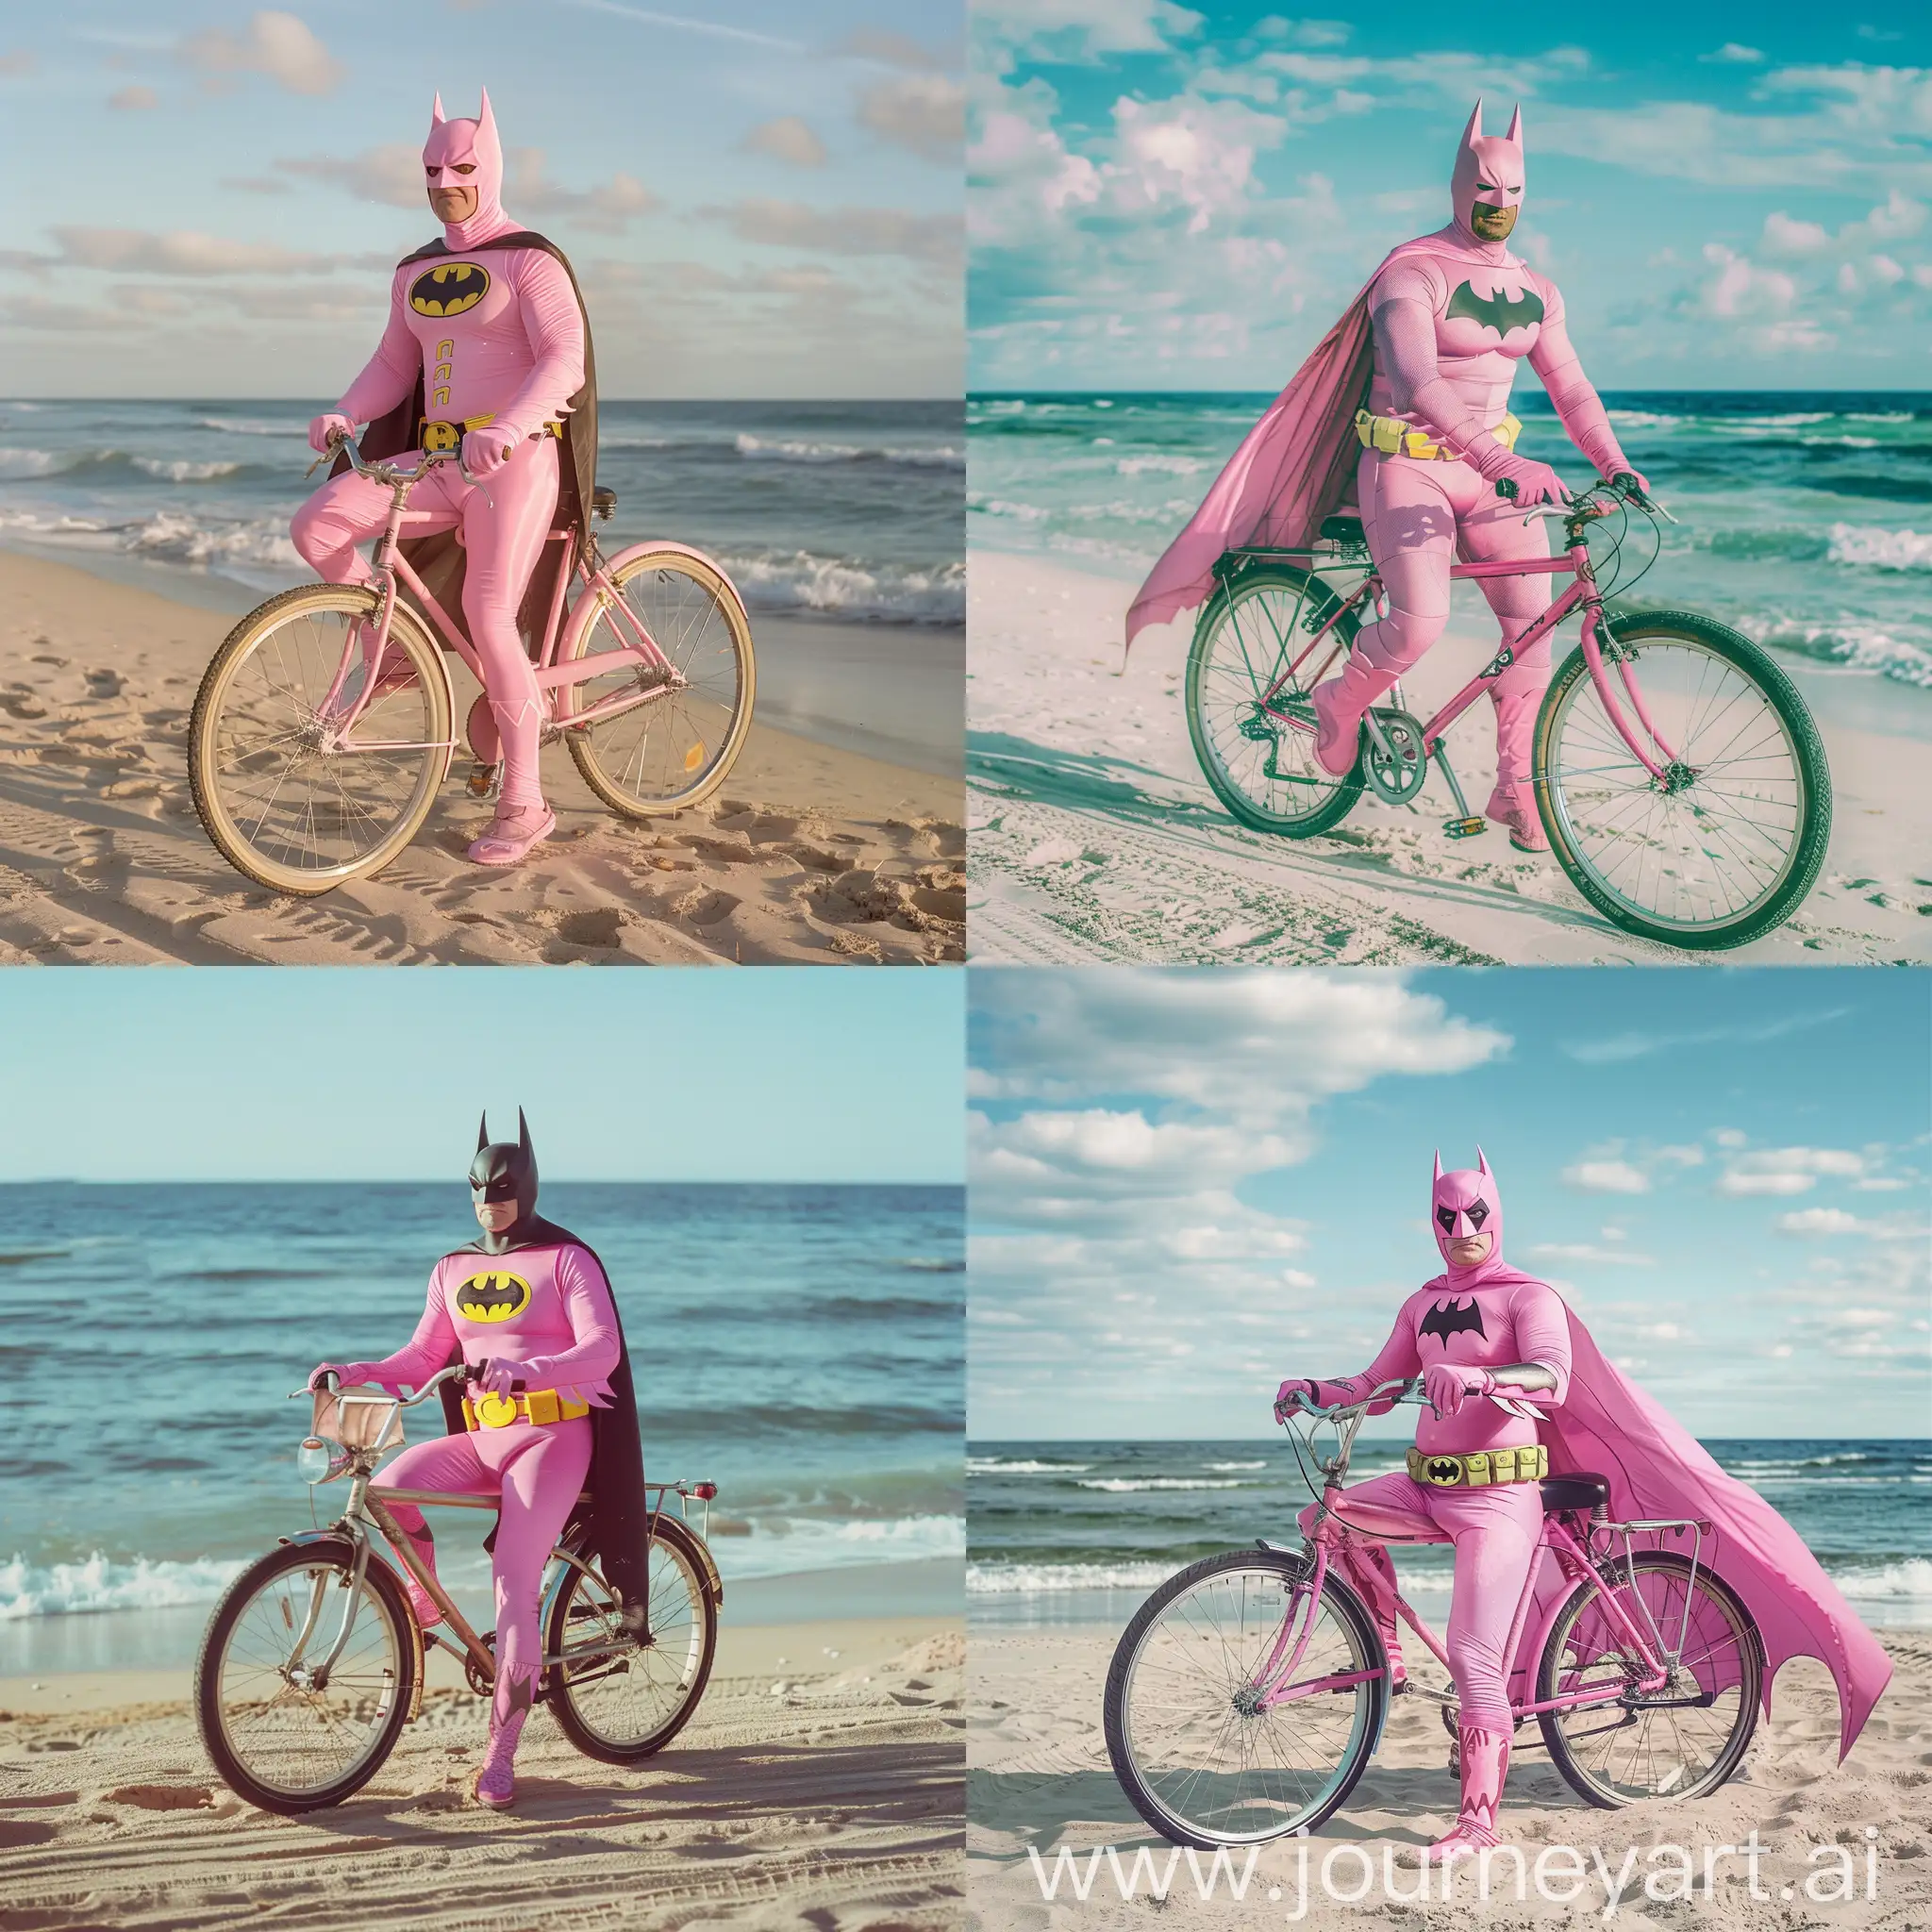 pink batman on a bike on the beach
